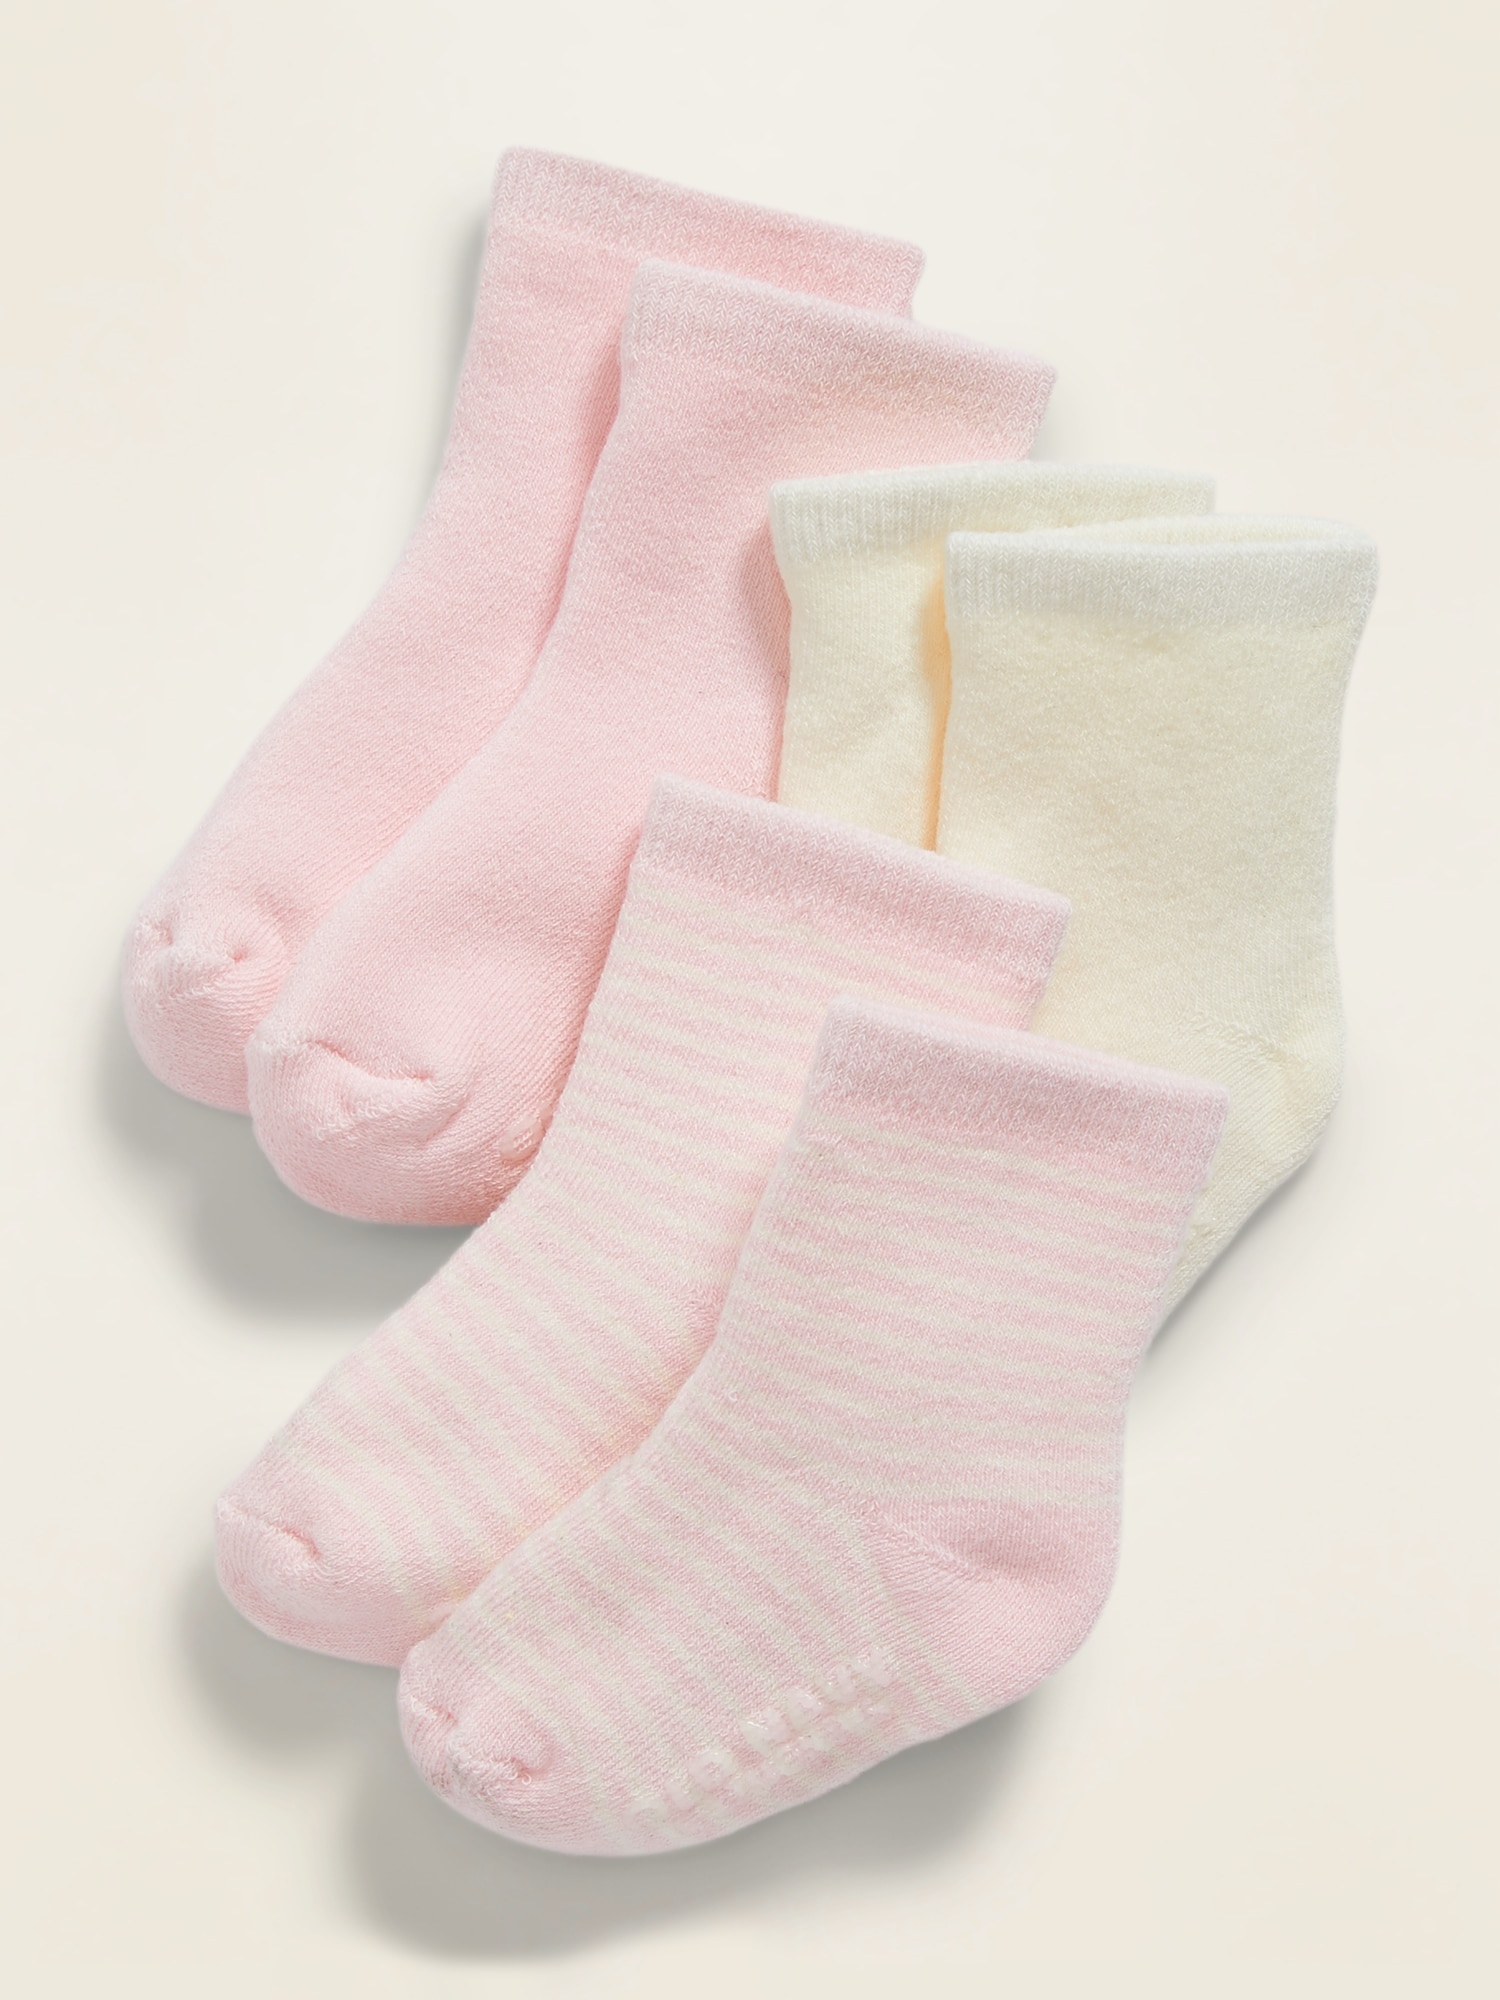 Unisex Crew Socks 3-Pack for Baby | Old Navy